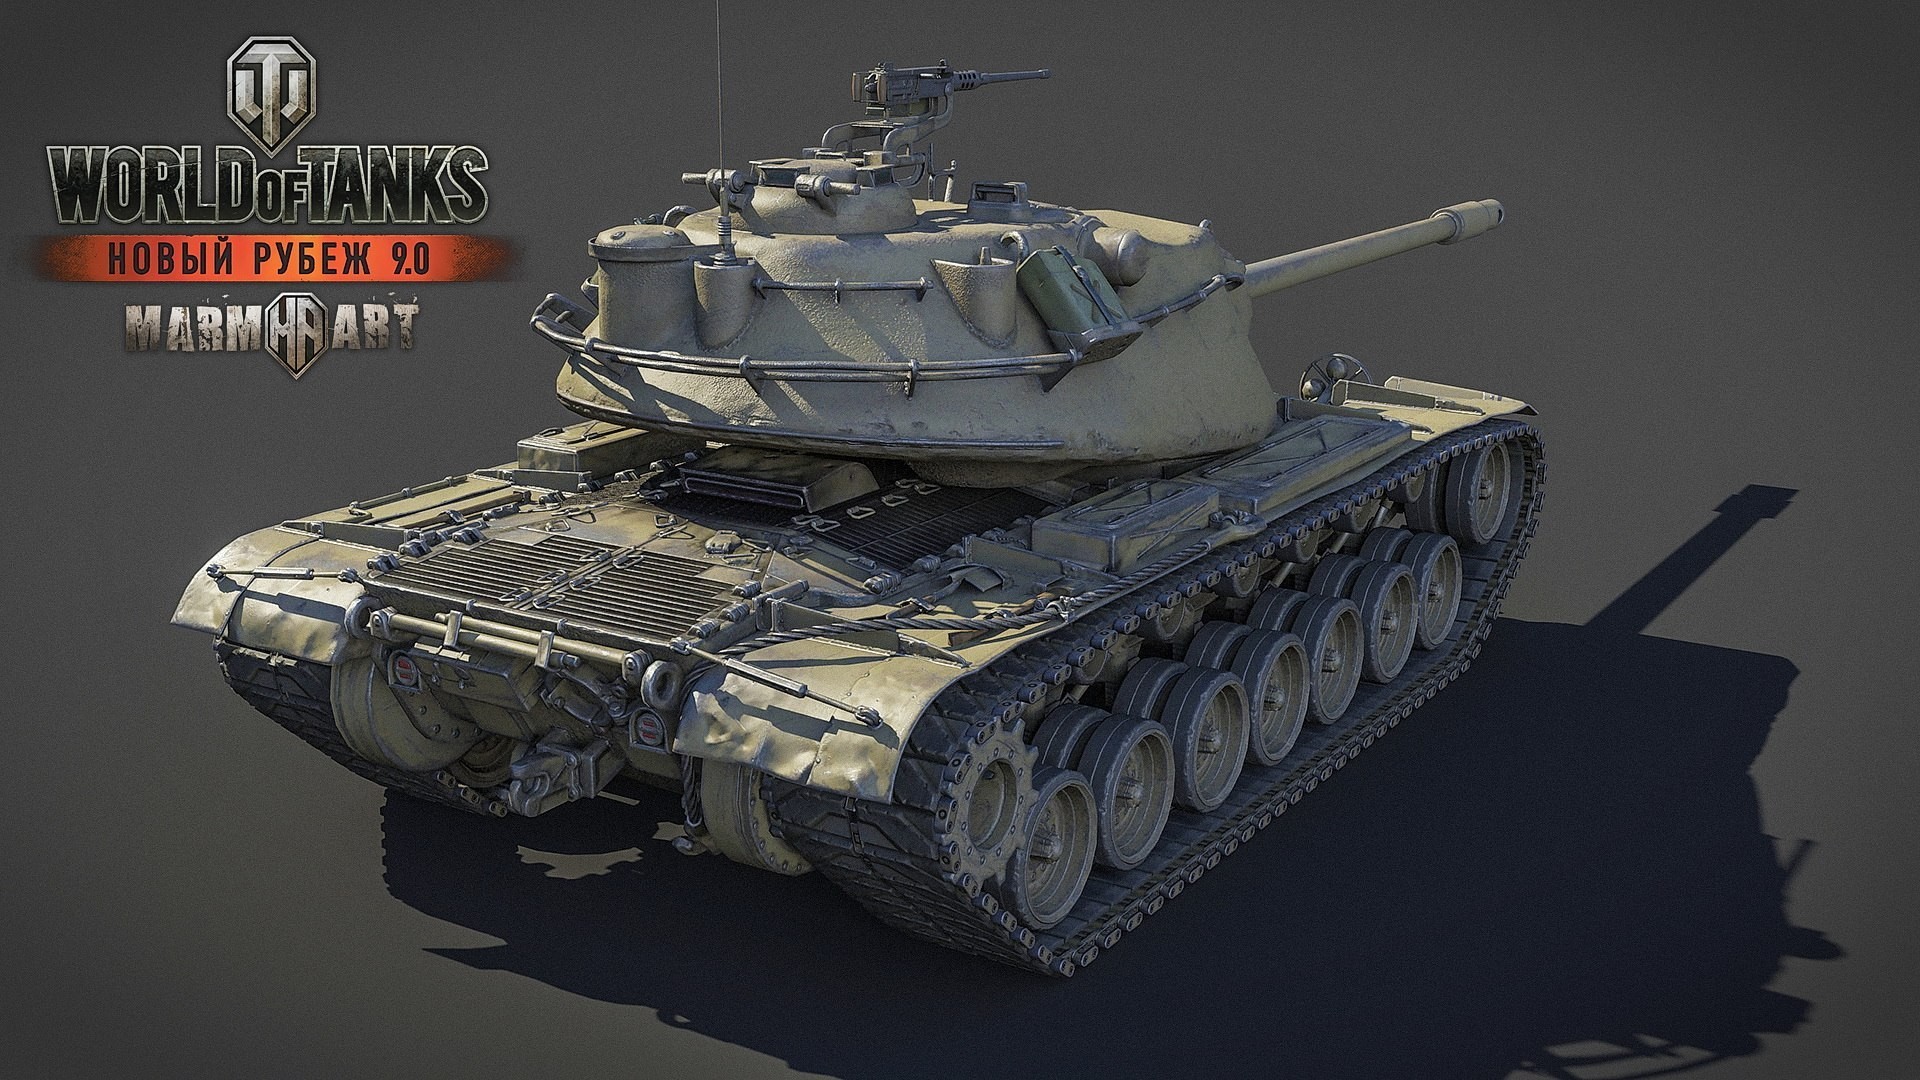 General 1920x1080 World of Tanks tank wargaming video games M103 American tanks